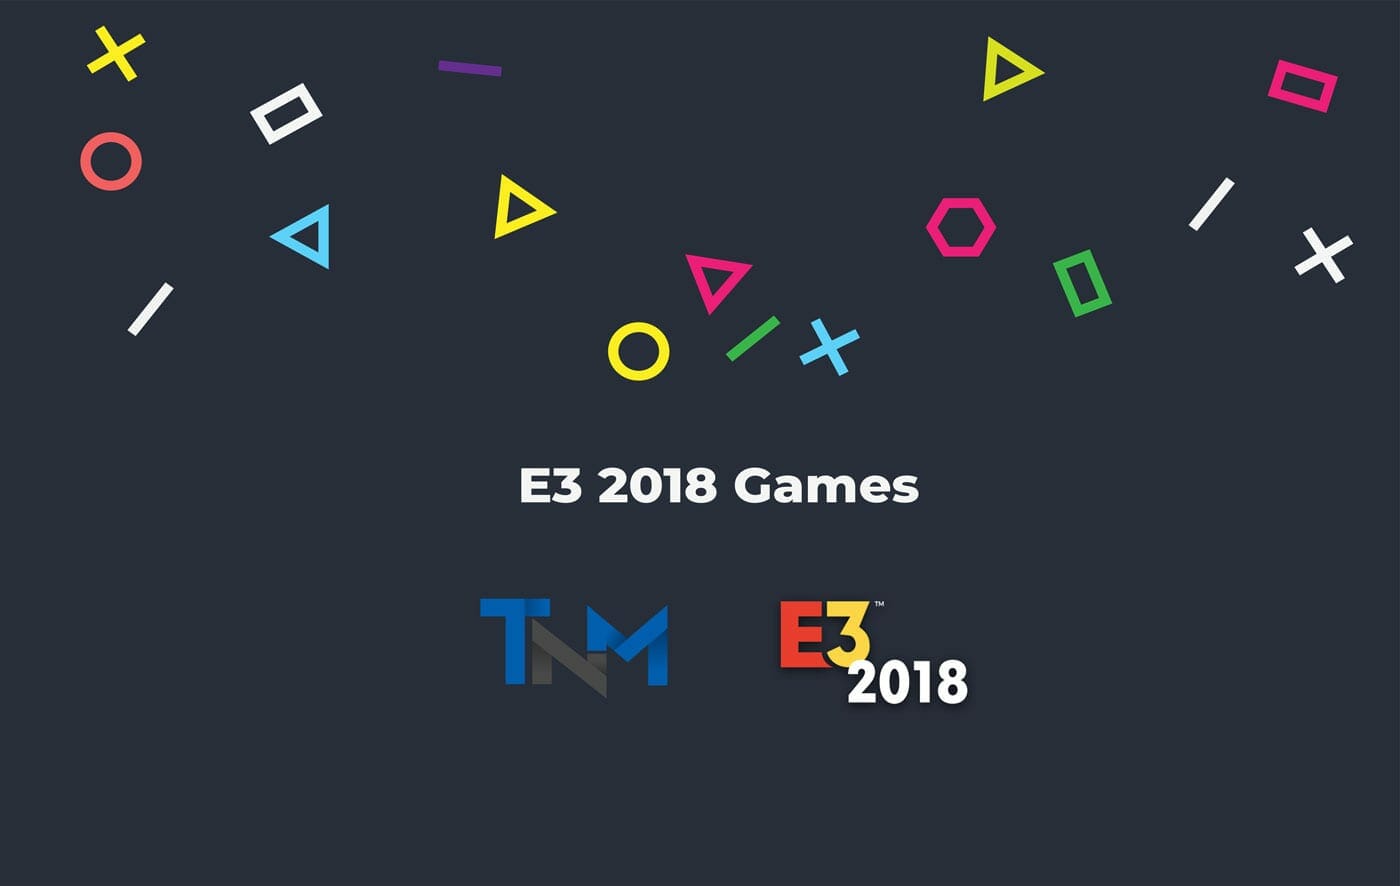 TheNerdMag E3 2018 Coverage